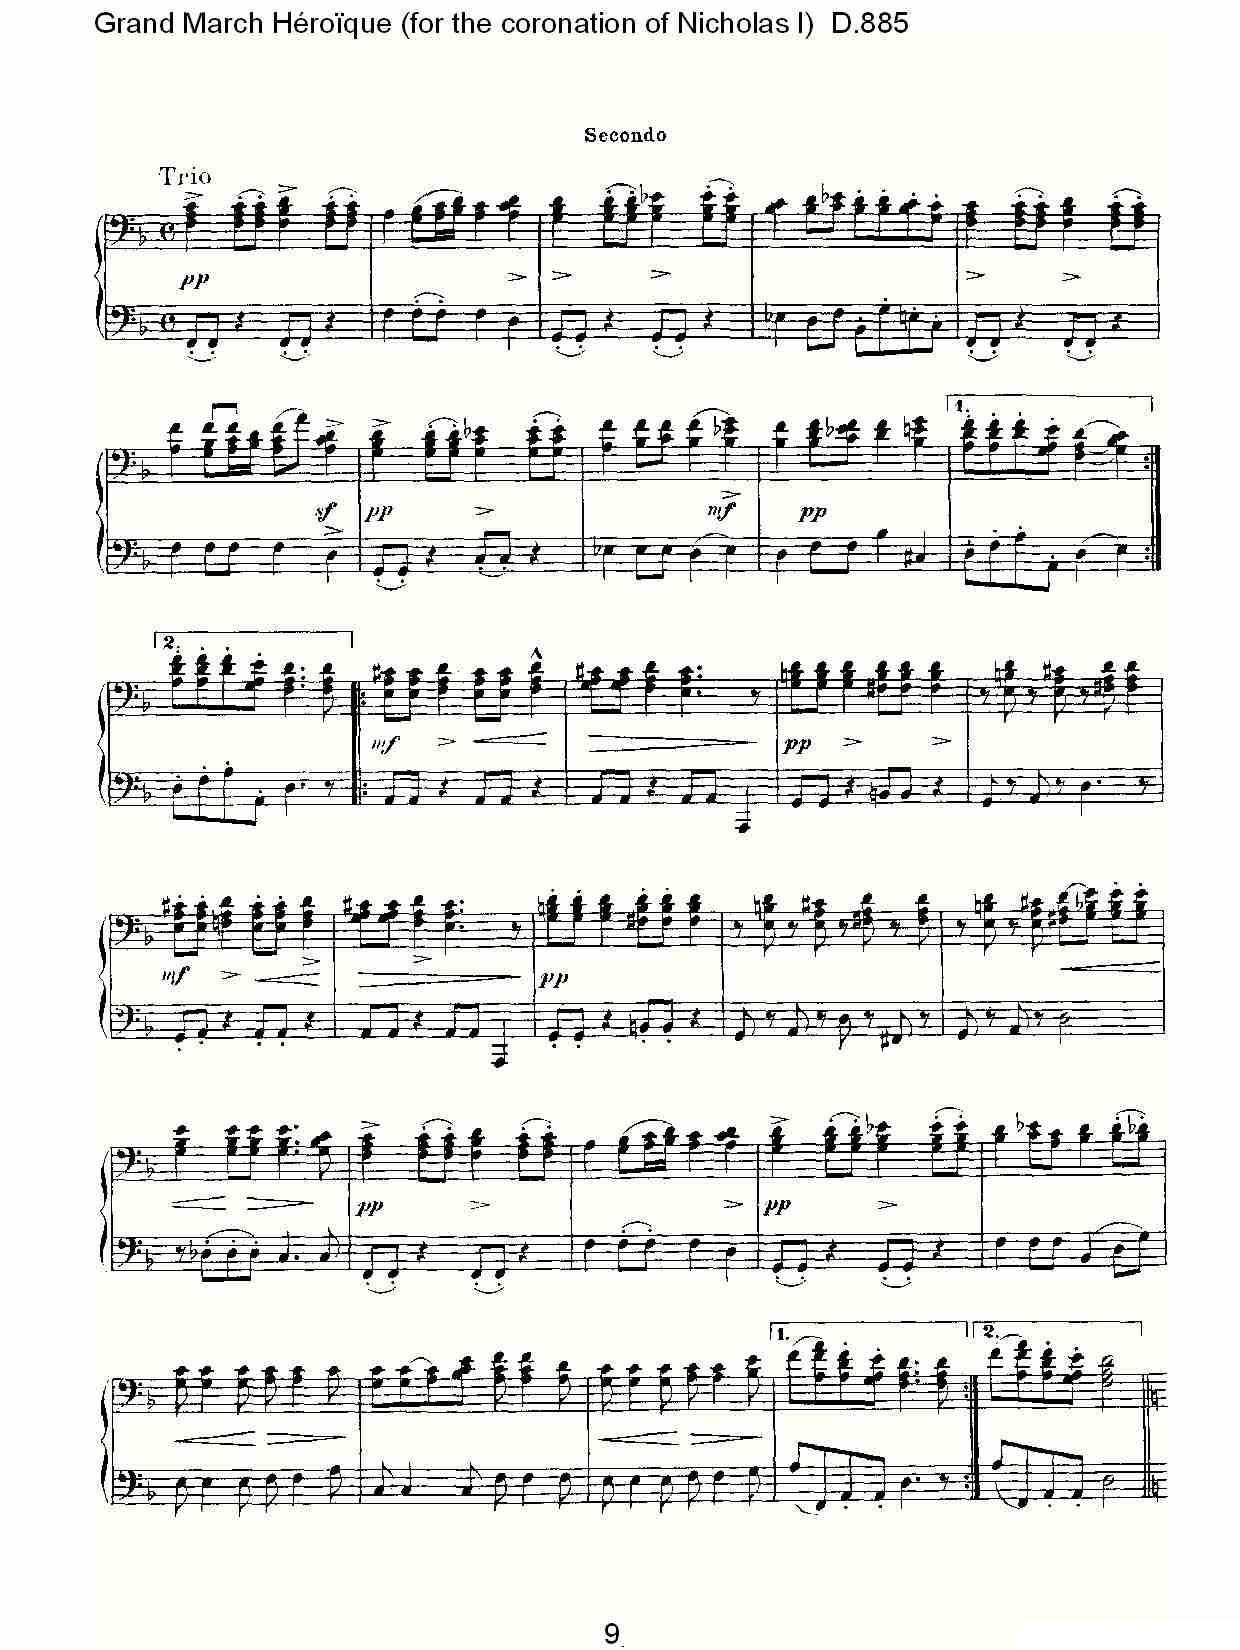 豪华进行曲（为尼古拉斯一世加冕礼而作)D.88）钢琴曲谱（图9）